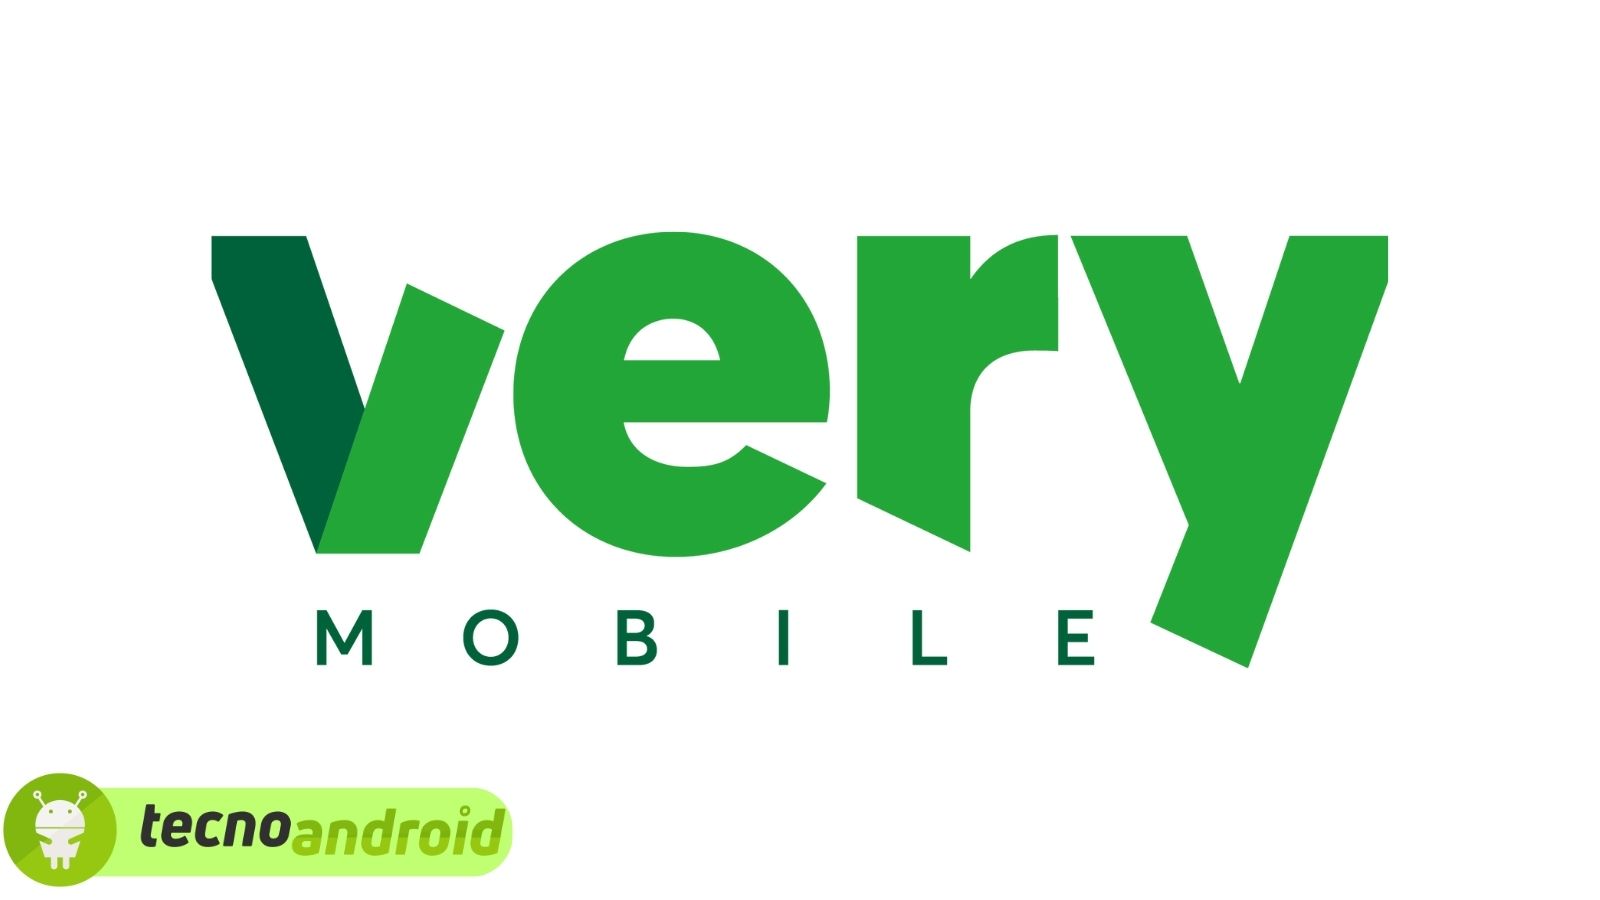 Very Mobile: offerta ILLIMITATA per i già clienti